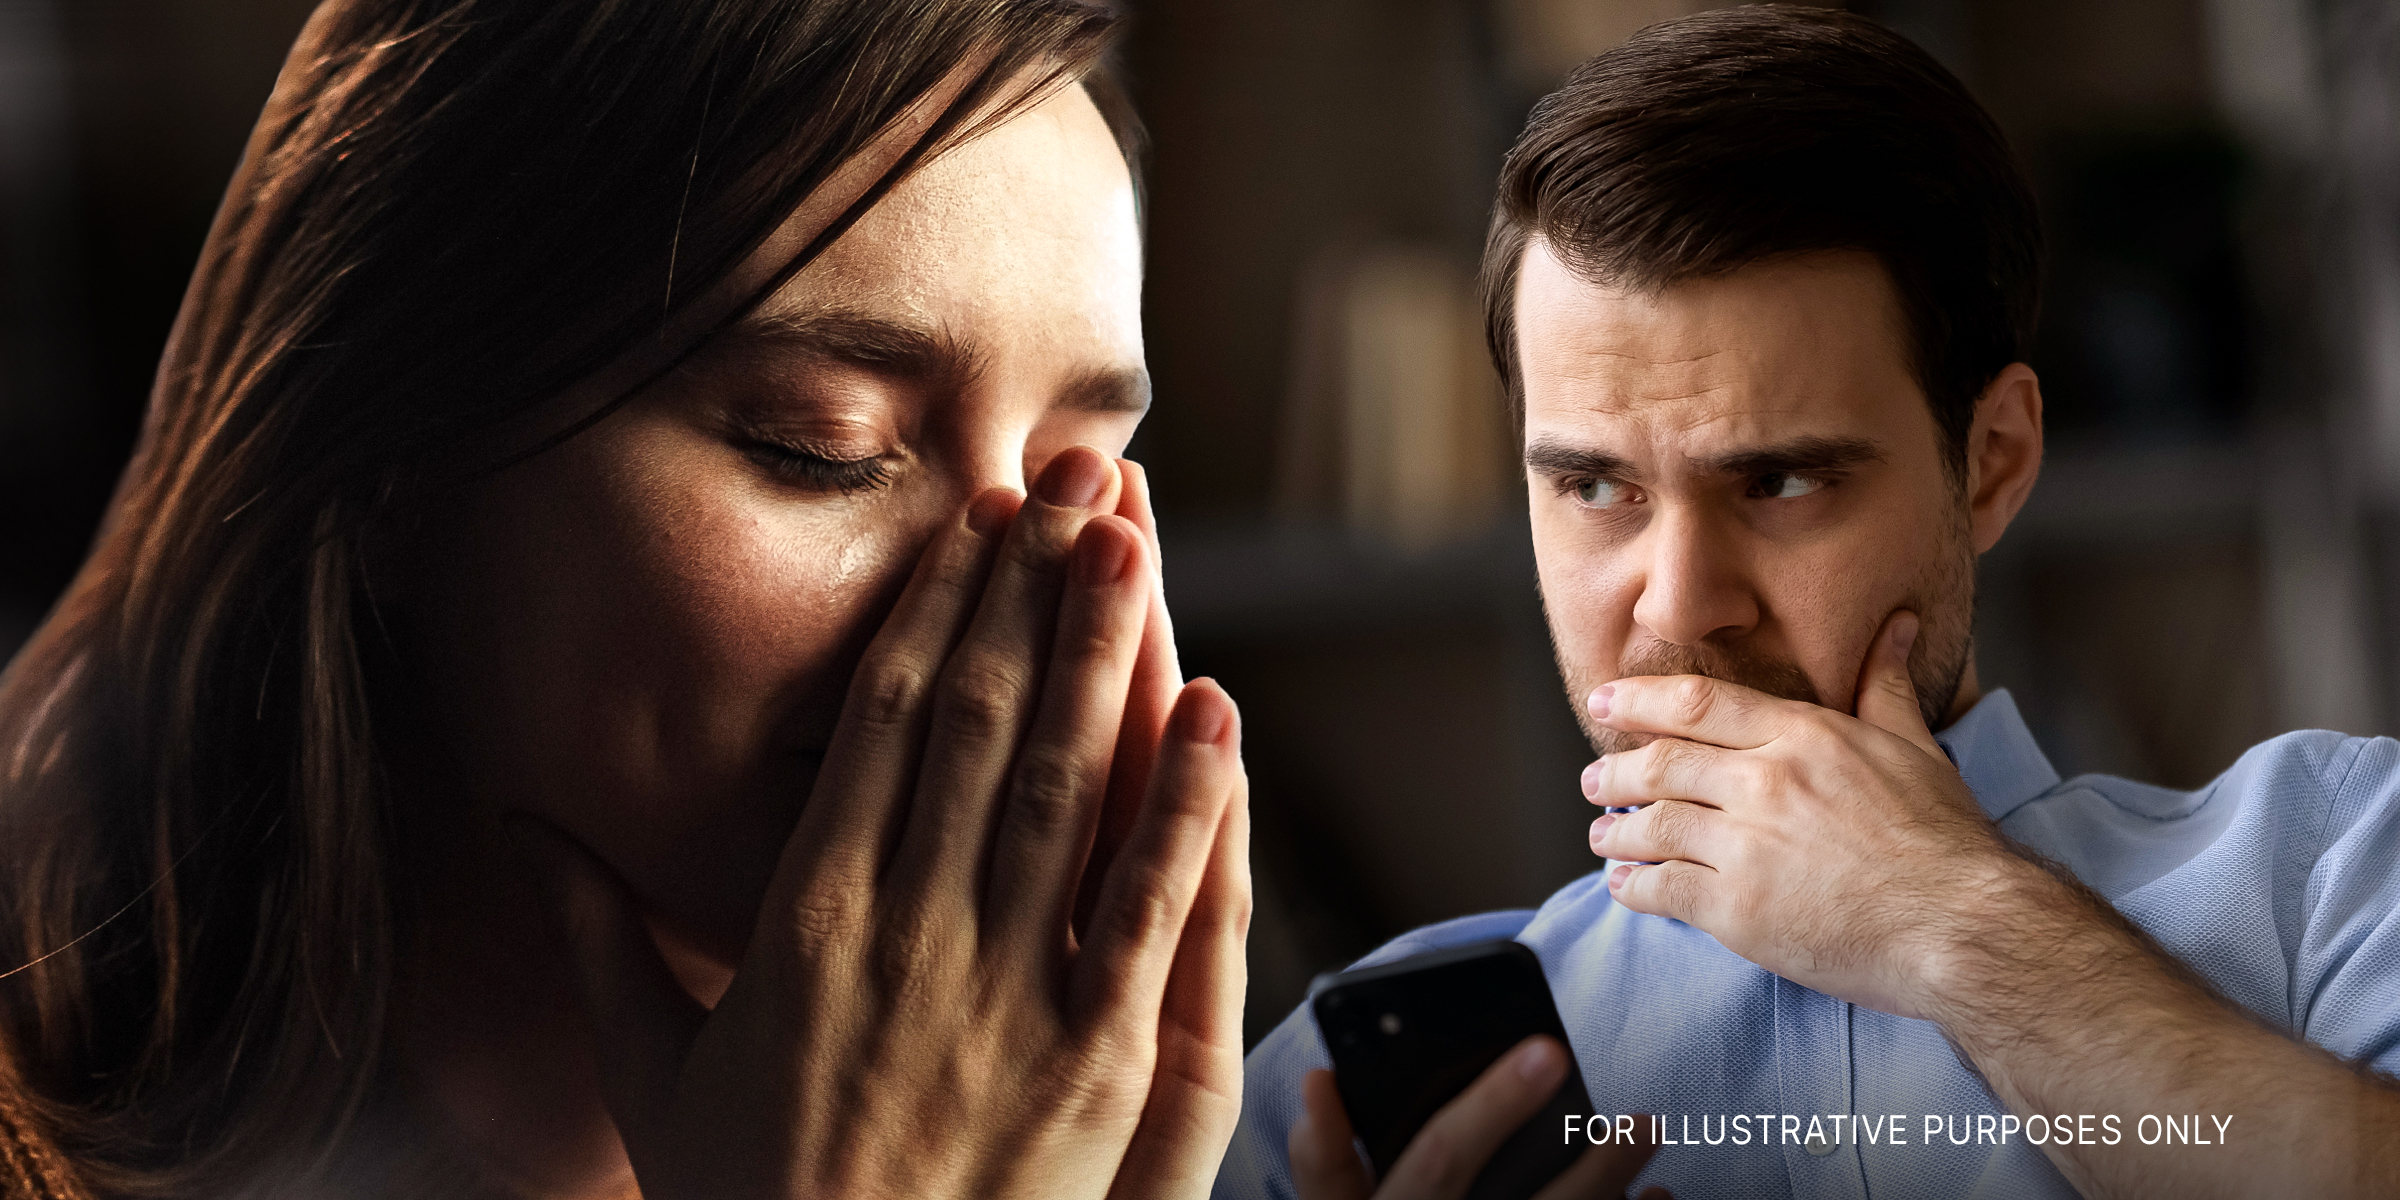 Frau mit Tränen in den Augen | Besorgter Mann | Quelle: Shutterstock